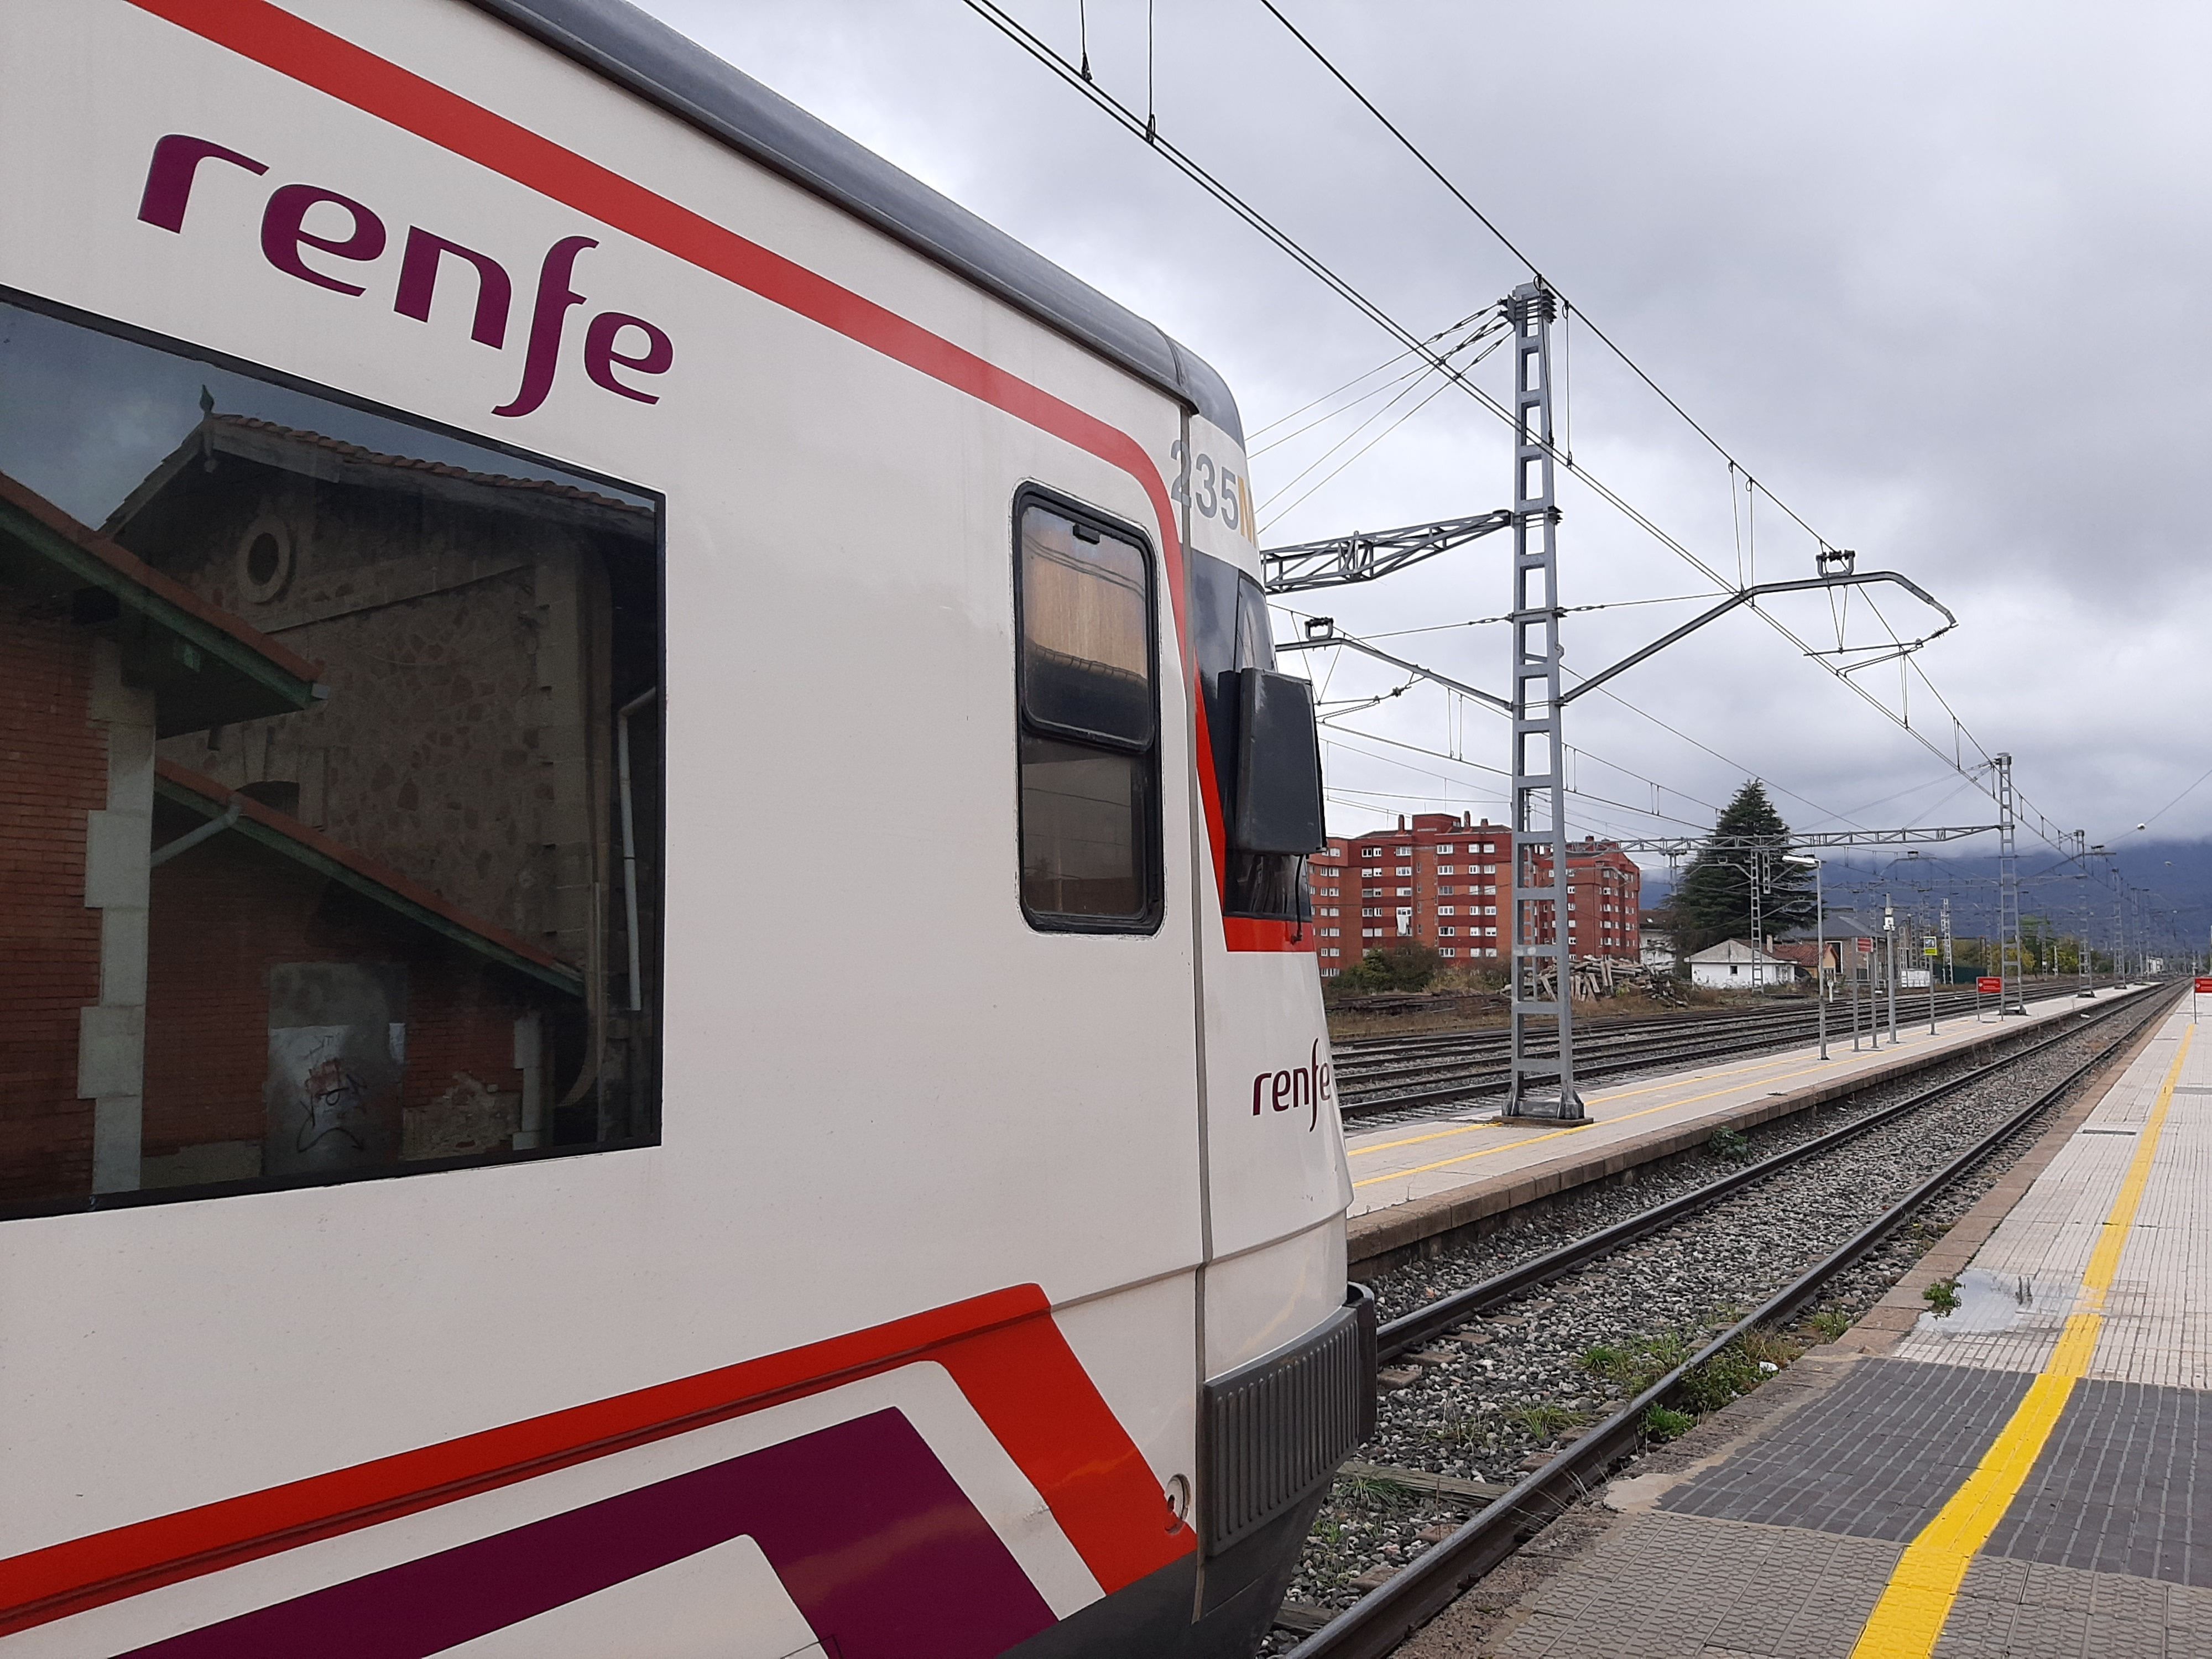 EuropaPress 4771002 tren renfe estacion reinosa cercanias transporte publico